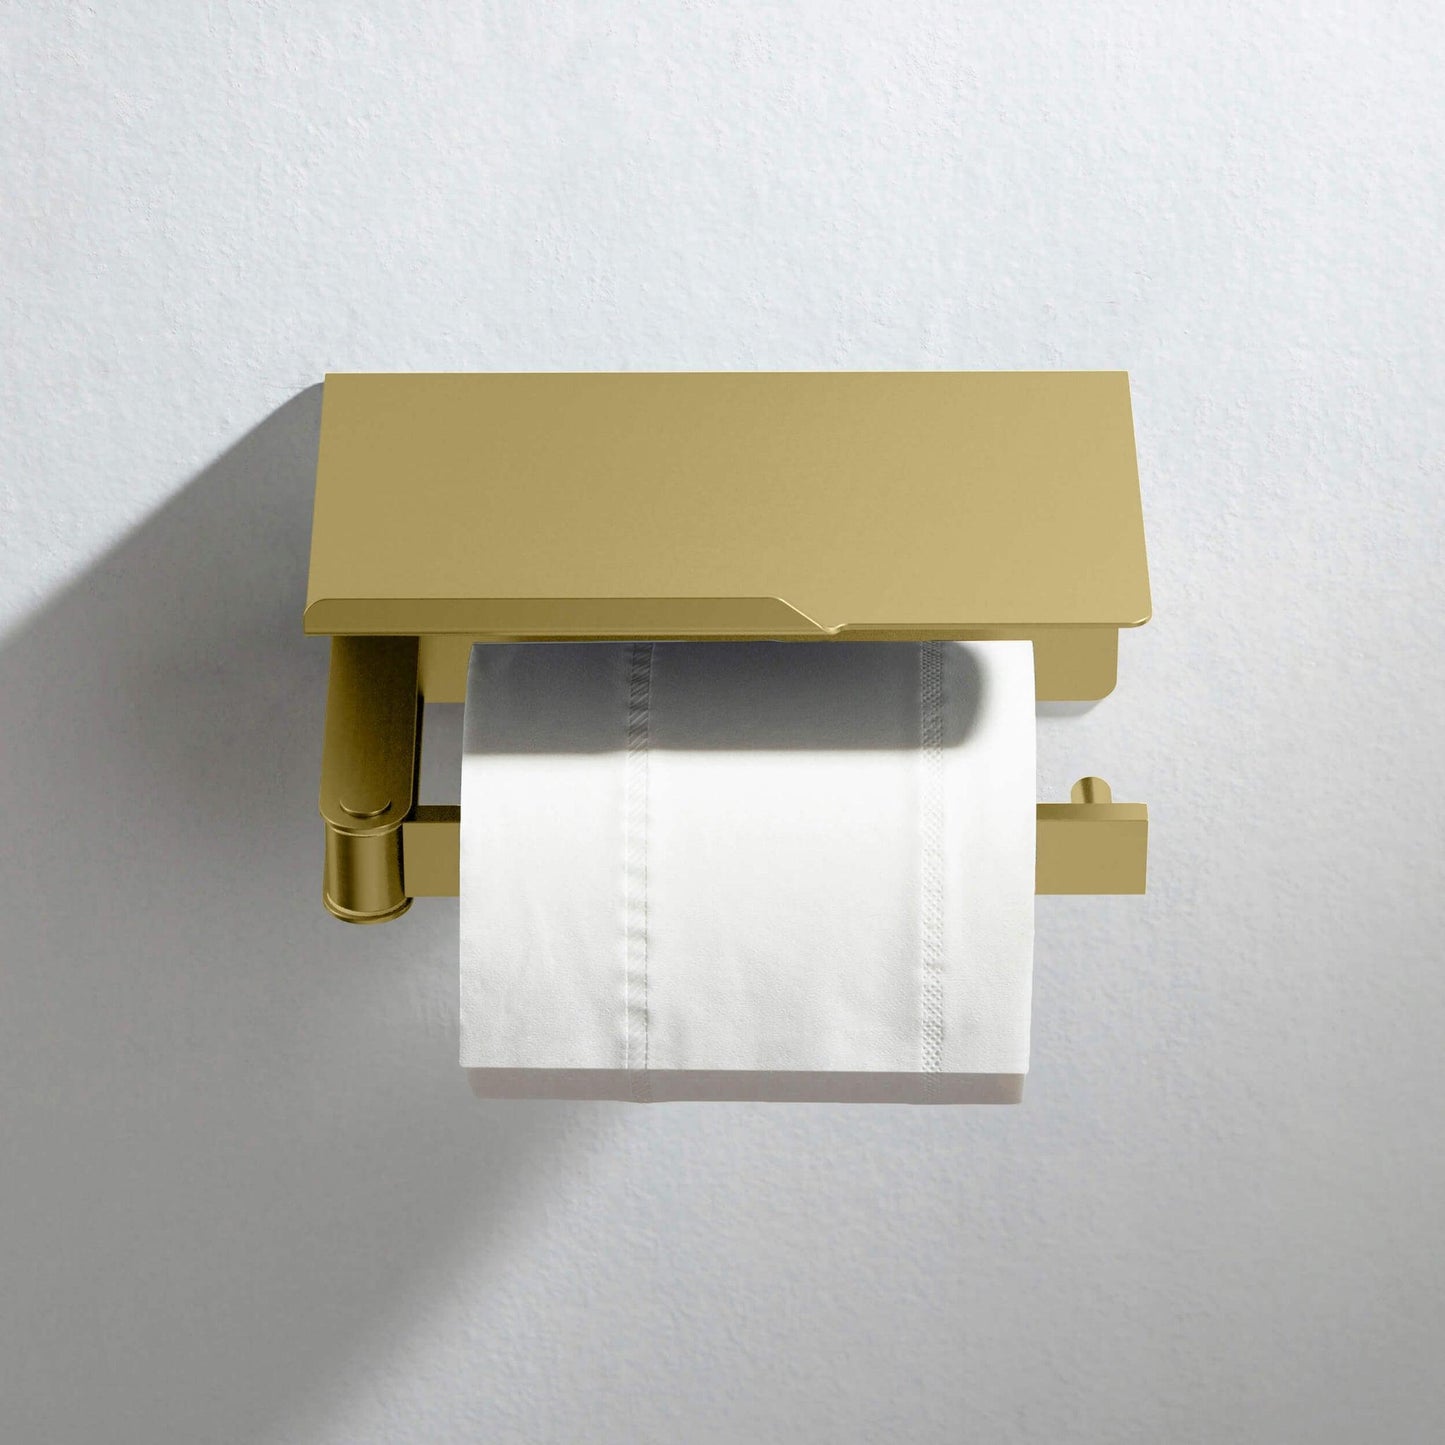 KIBI Deco Bathroom Toilet Paper Holder With Platform in Brushed Gold Finish